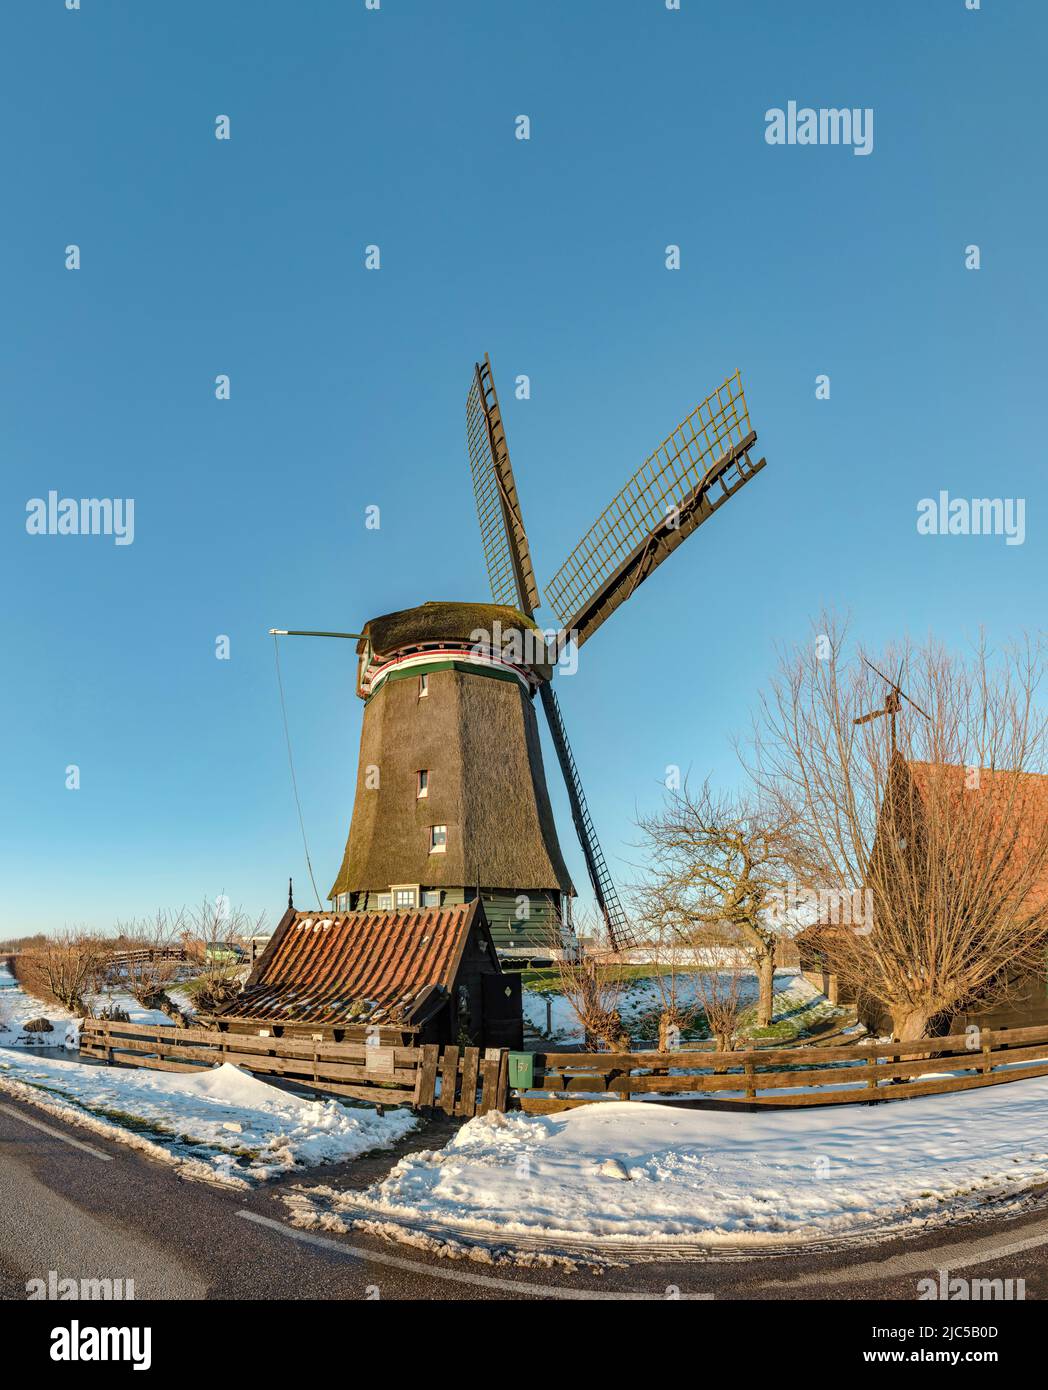 Molino de viento llamado Neckermolen *** Caption Local *** Países Bajos,molino de viento, campo, prado, invierno, nieve, Hielo, Cuello, Holanda Septentrional, Holanda, viento Foto de stock